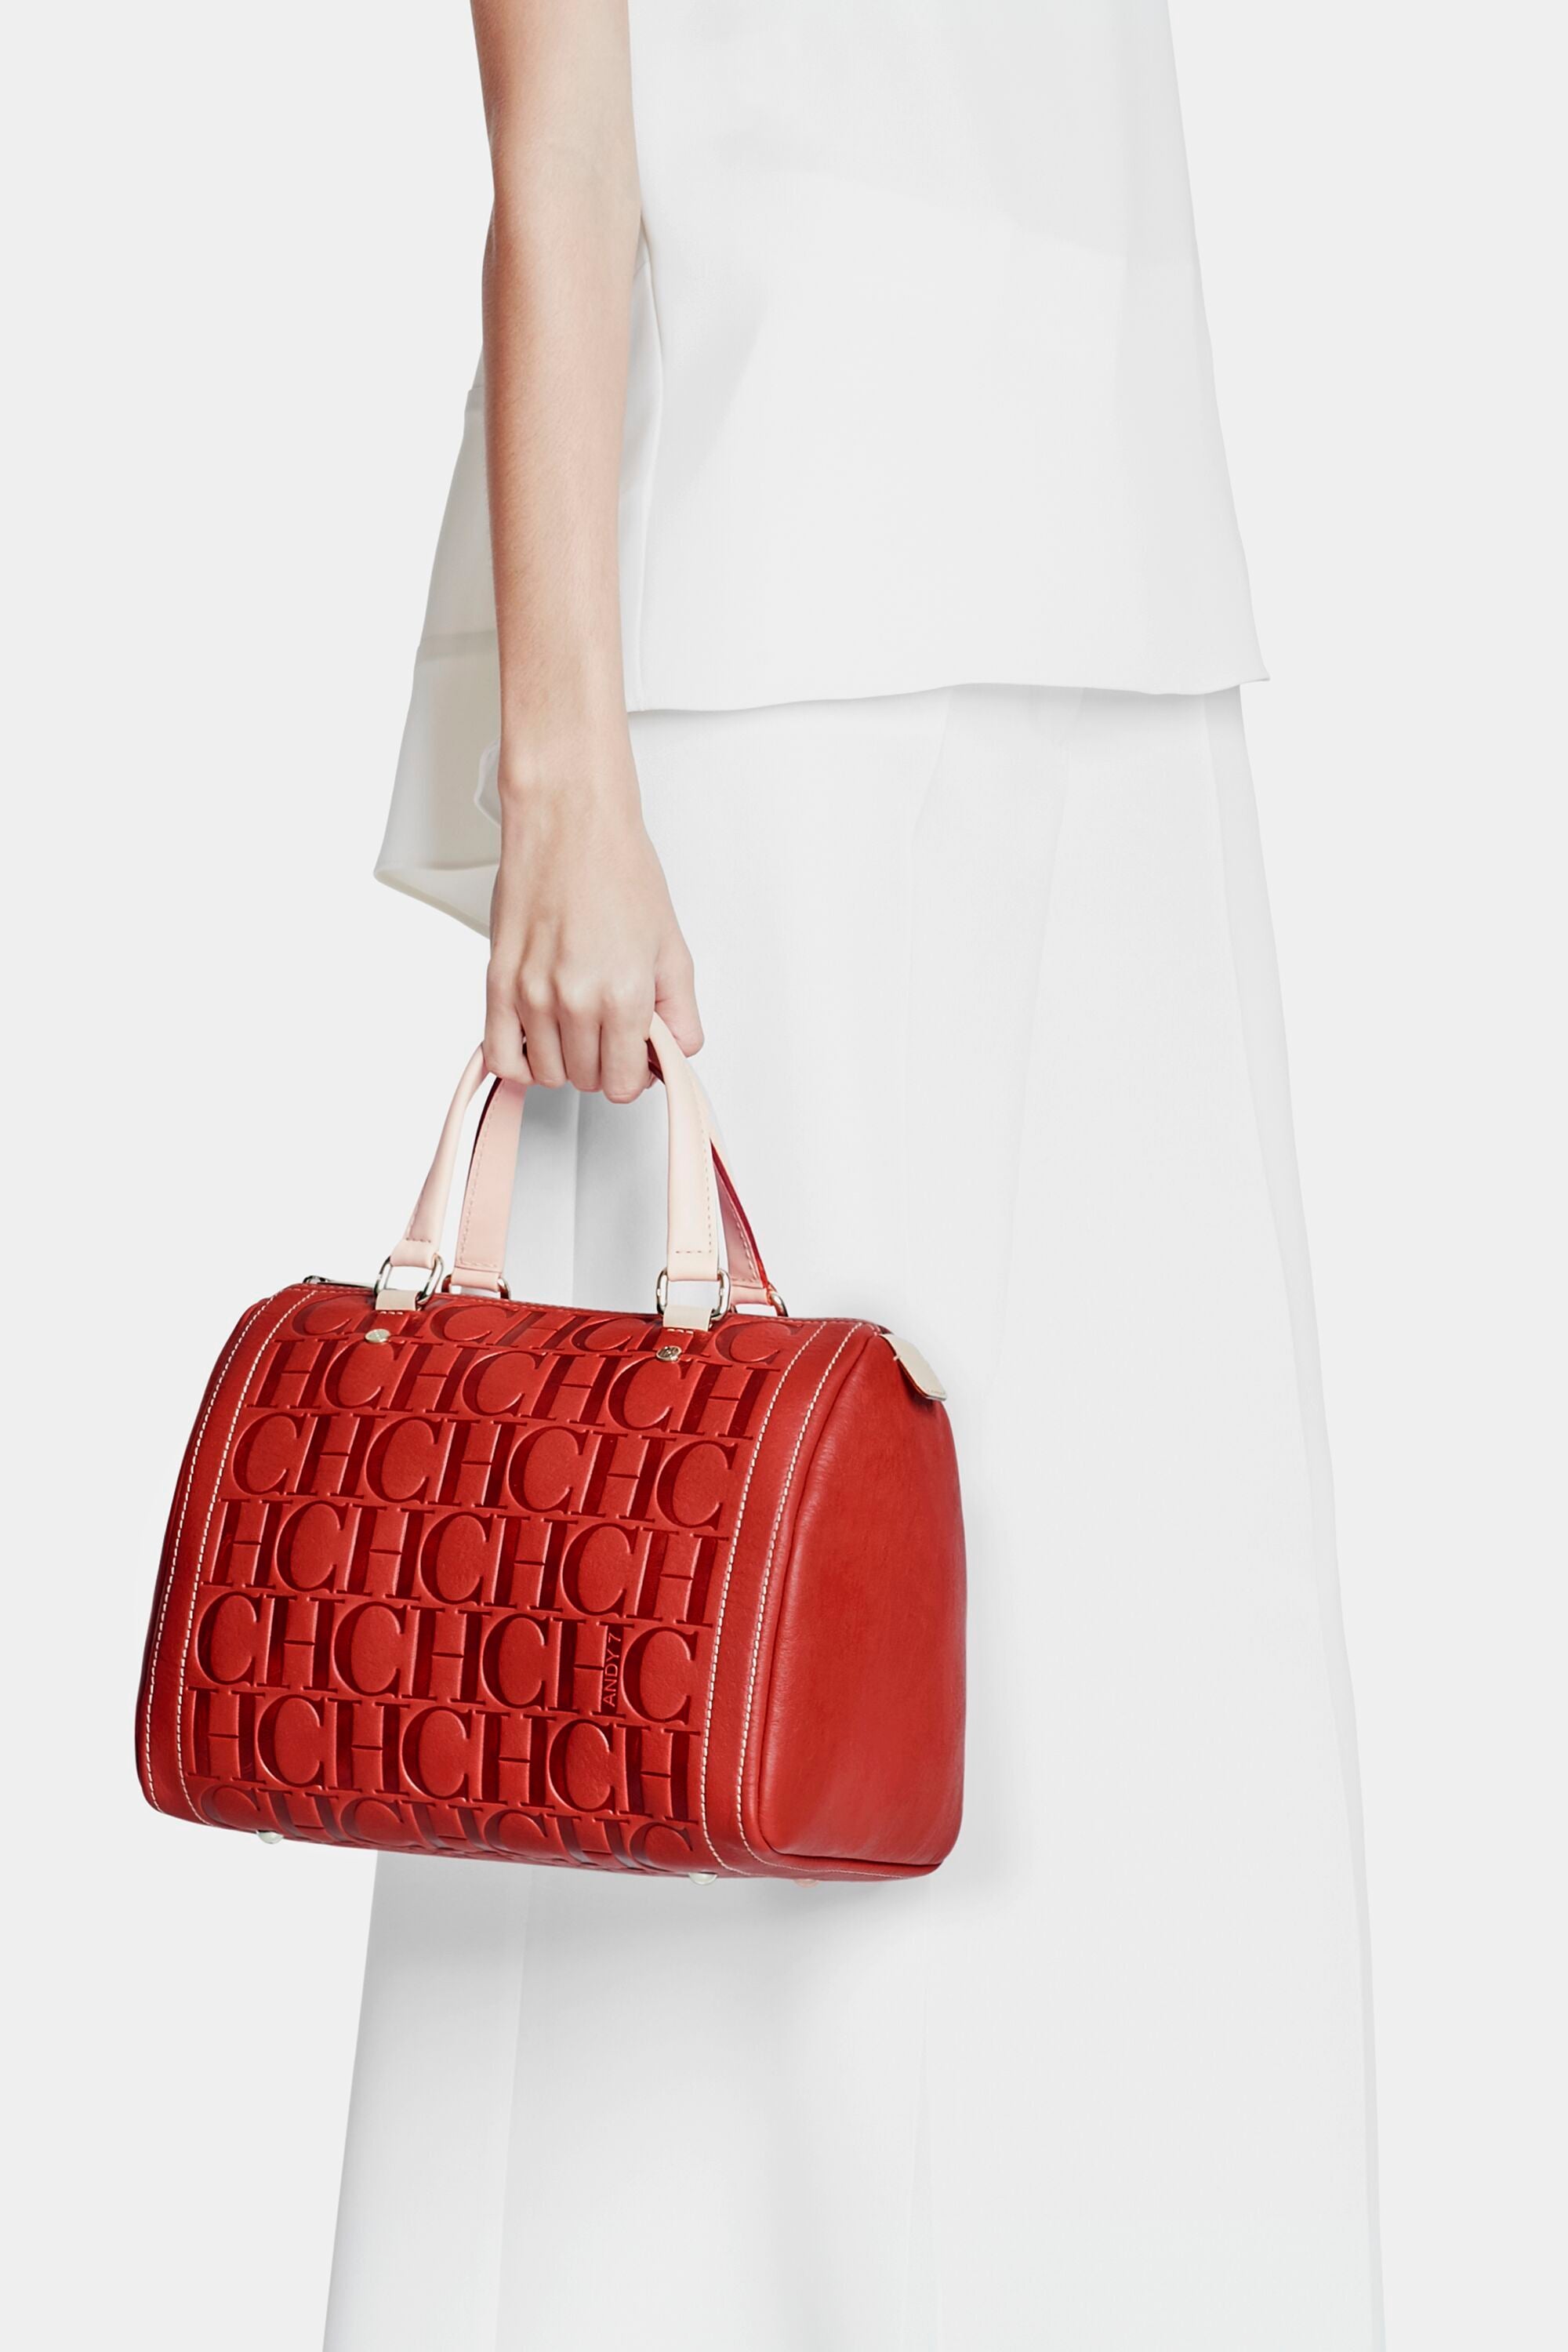 Andy 7 | Medium handbag red - CH Carolina Herrera Luxembourg